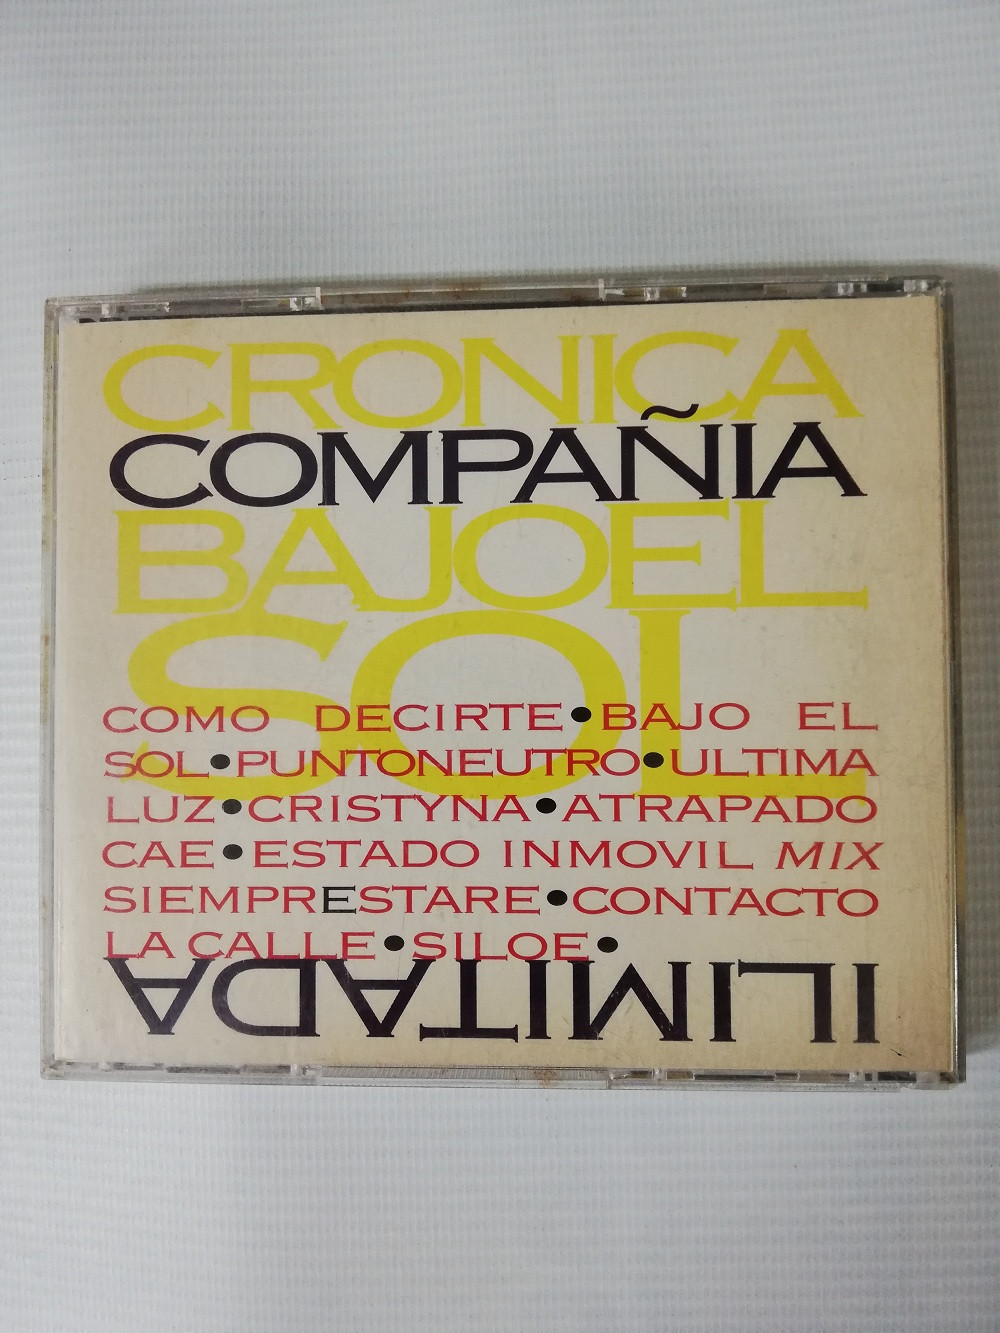 Imagen CD COMPAÑIA ILIMITADA - CRÓNICA BAJO EL SOL 2